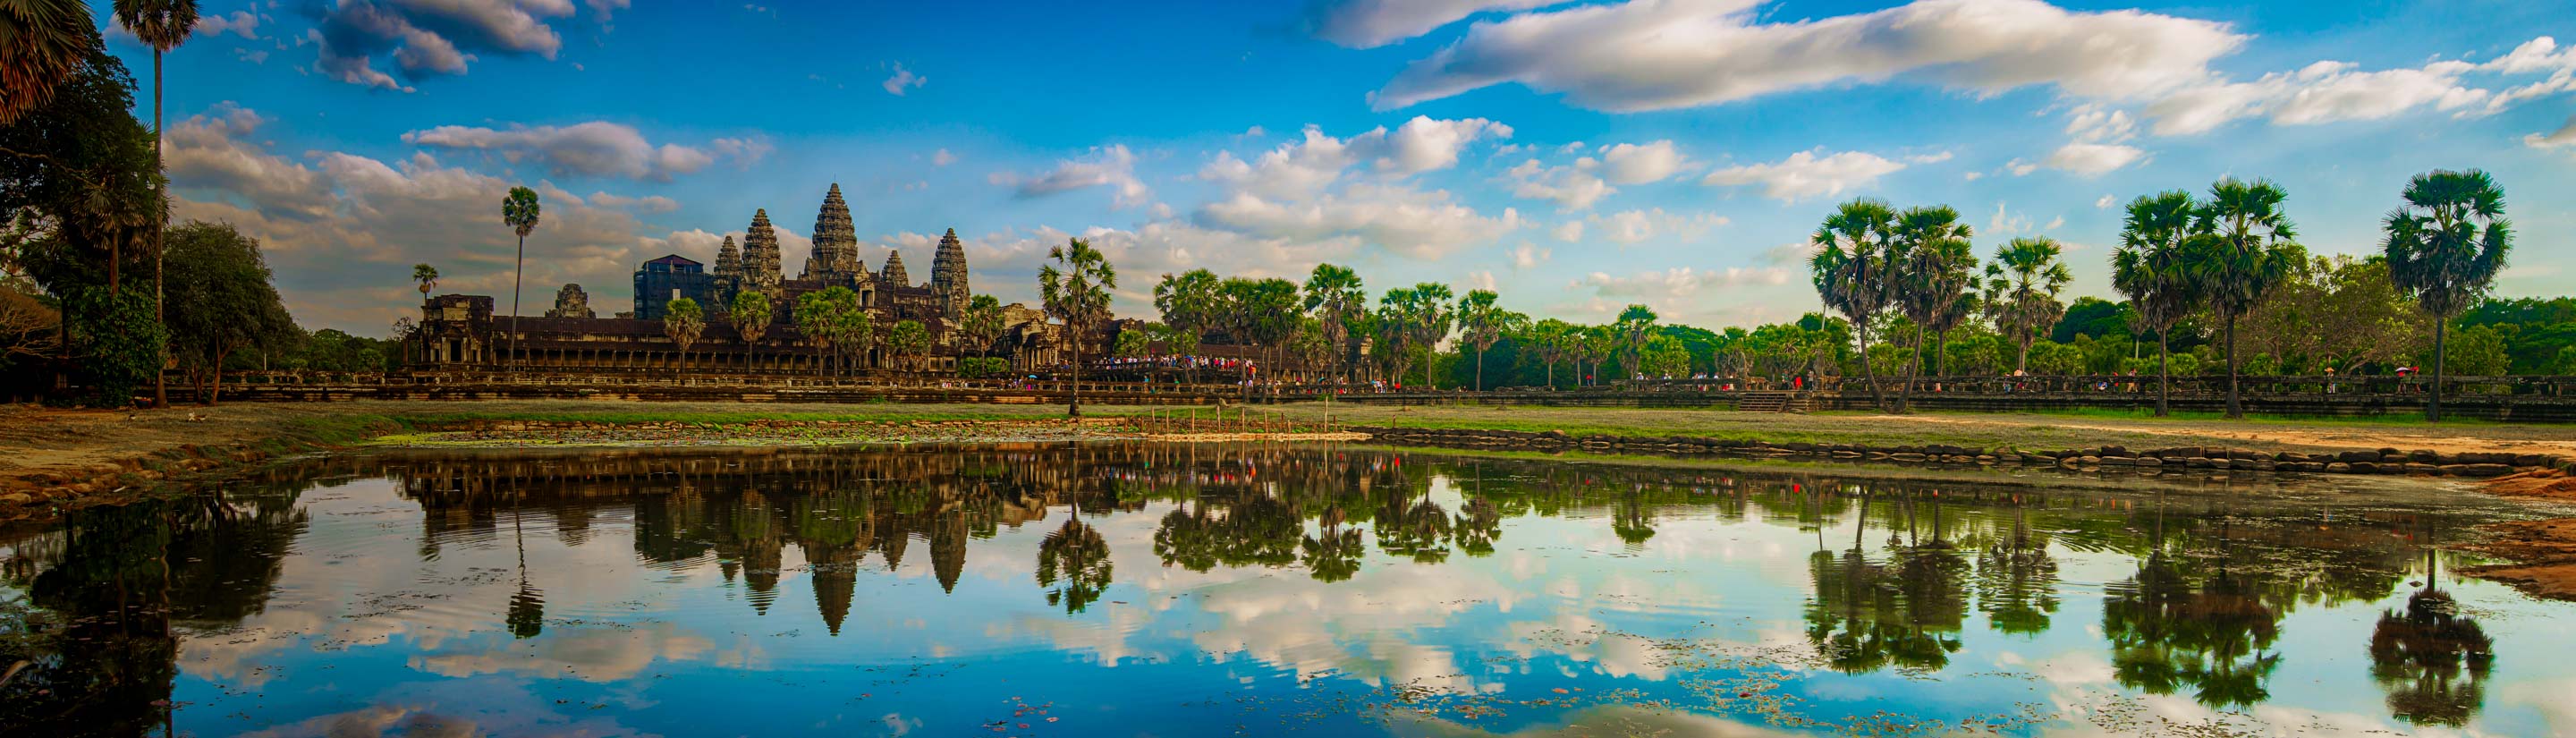 Kambodscha: eine faszinierende Rundreise